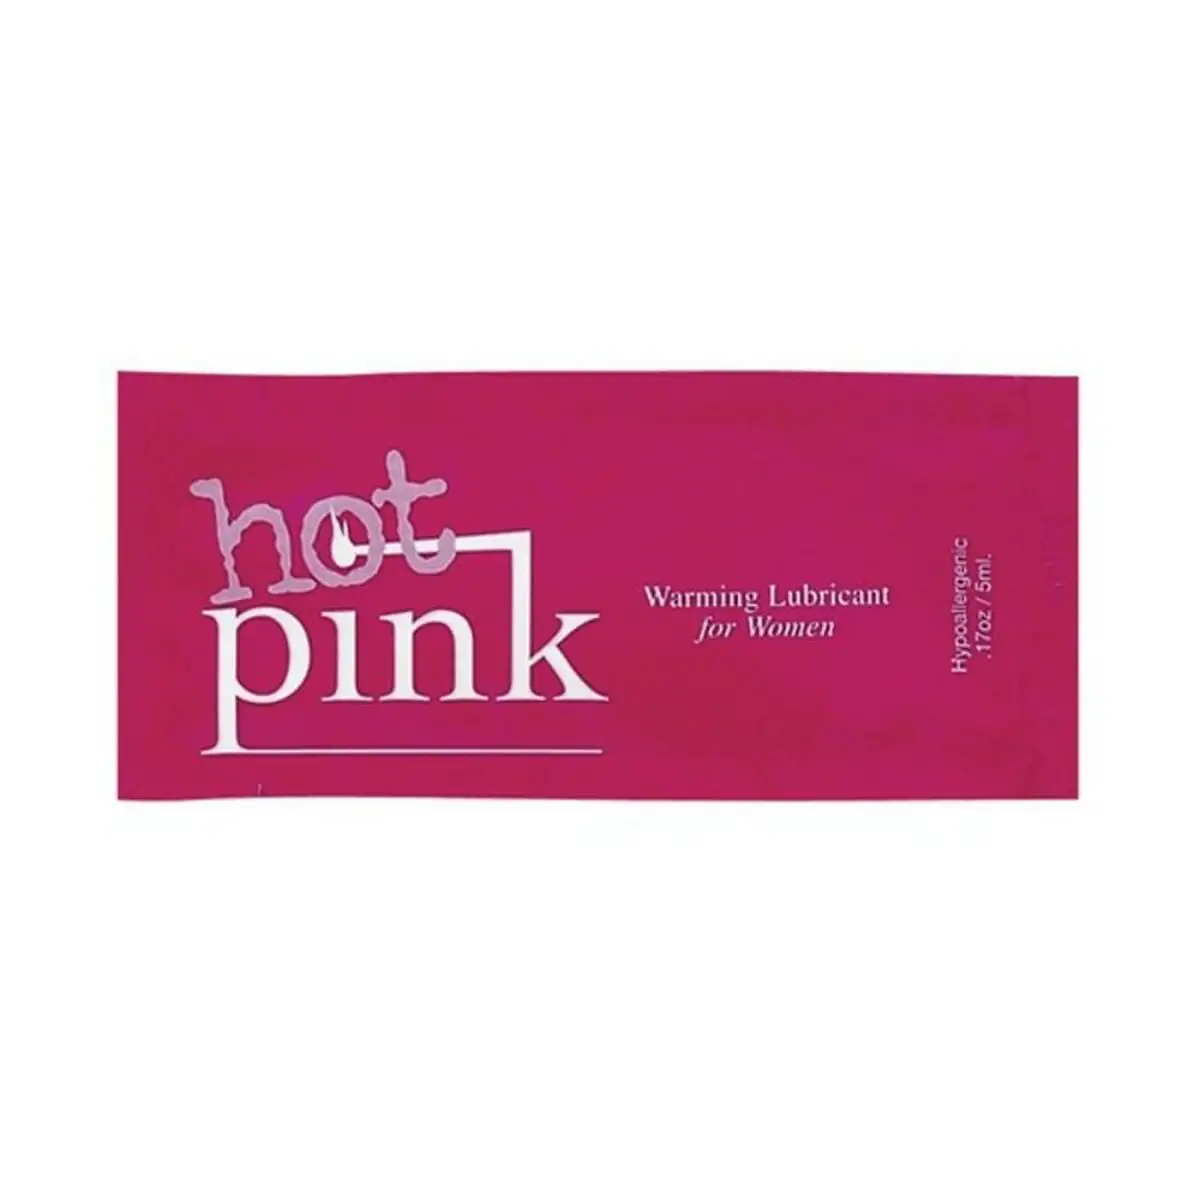 Lubrifiant chauffant rose 5 ml pink 272_4930. Entrez dans DIAYTAR SENEGAL - Où Chaque Détail Compte. Explorez notre boutique en ligne pour trouver des produits de haute qualité, soigneusement choisis pour répondre à vos besoins et vos désirs.